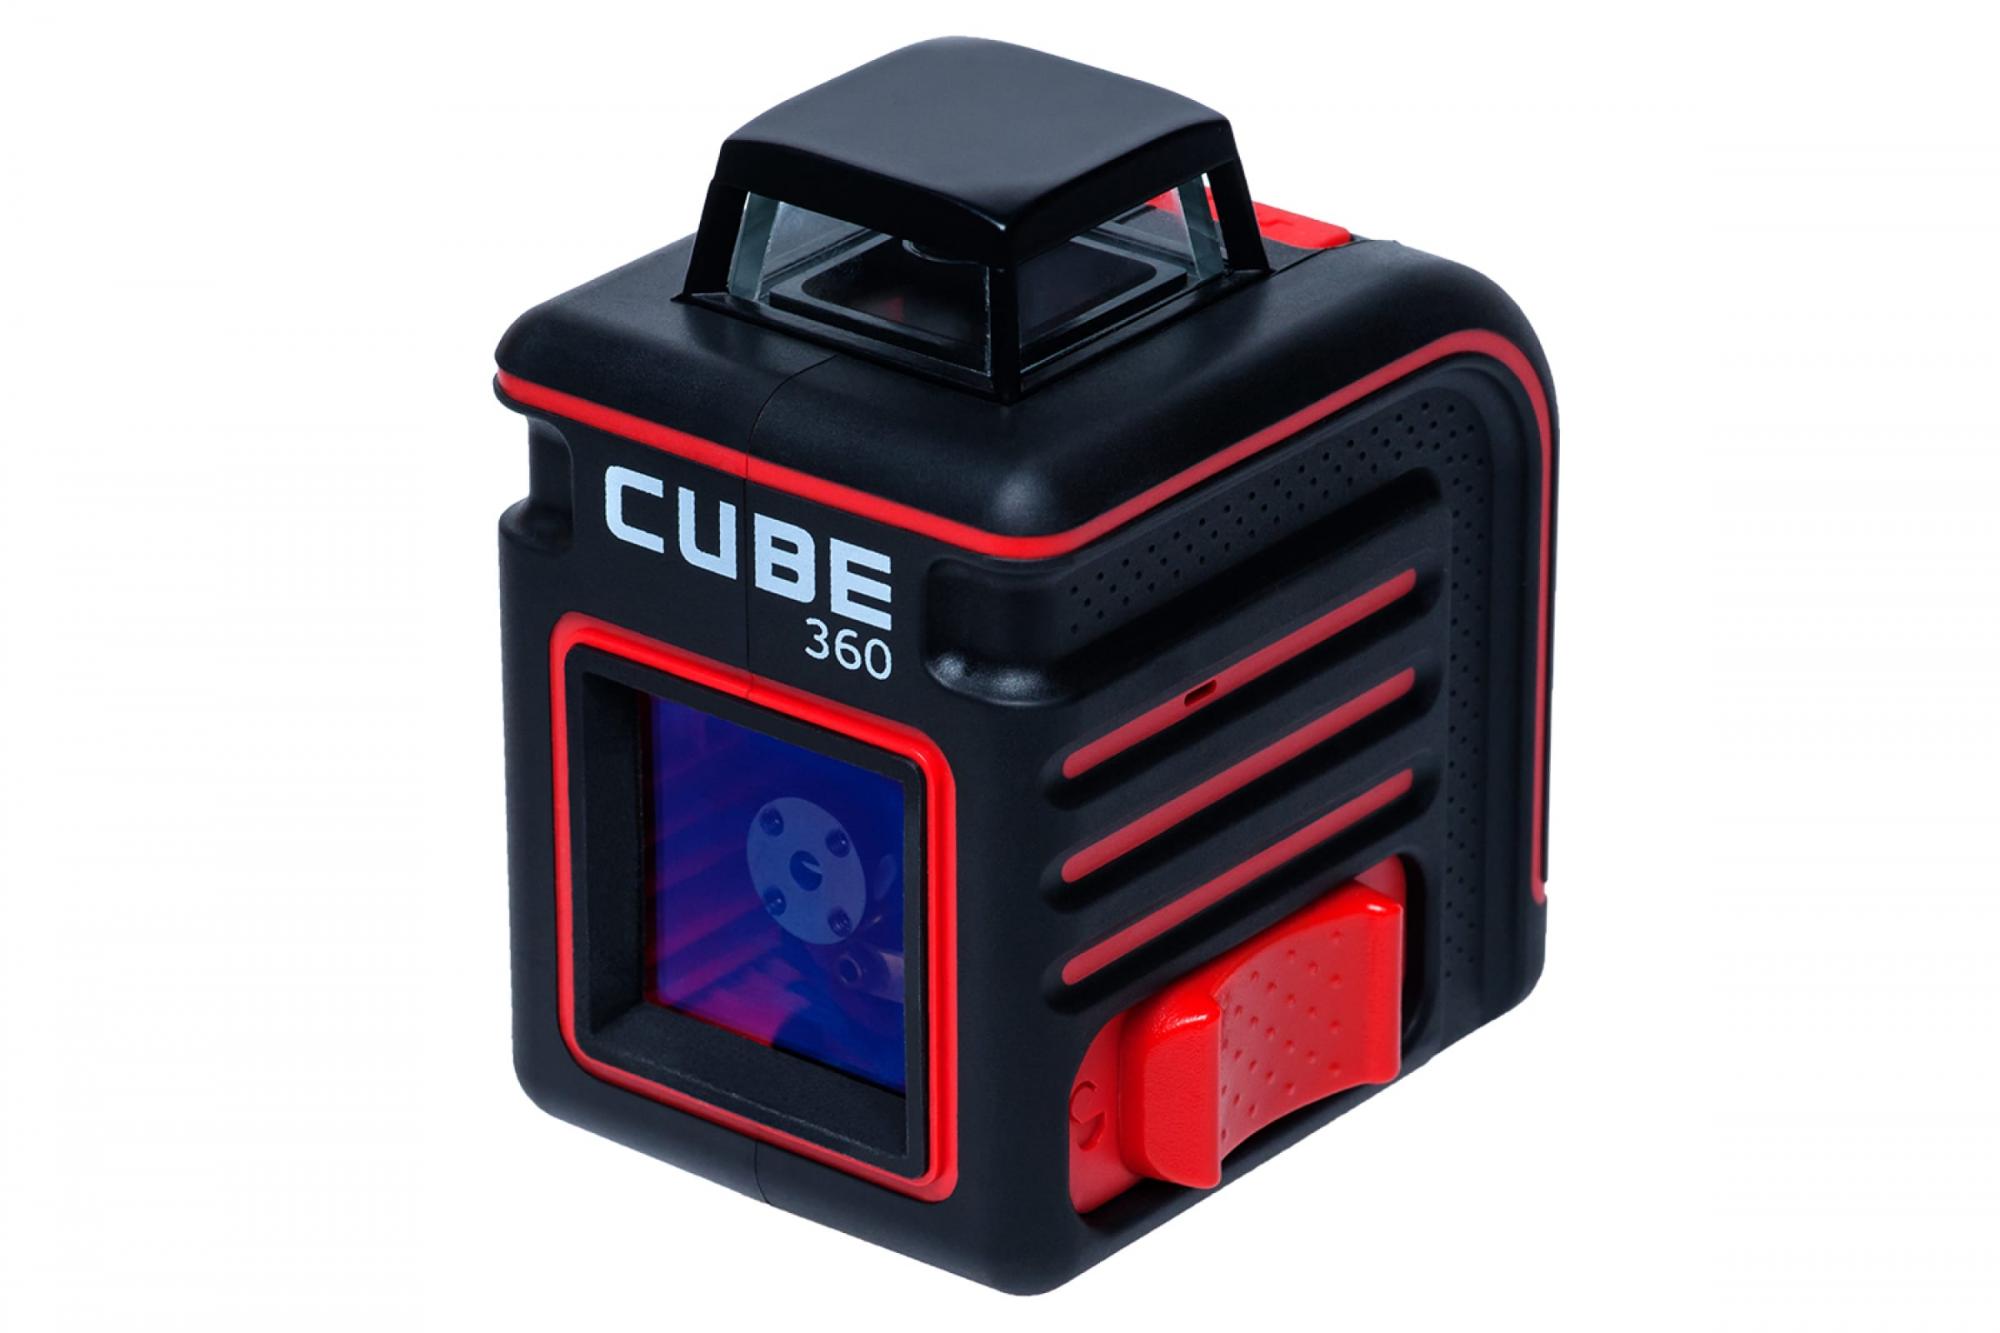 Ada instruments cube. Нивелир лазерный ada Cube 360 professional Edition. Лазерный уровень ada Cube 360 Basic Edition. Построитель лазерных плоскостей ada Cube 360 professional Edition а00445. Ada instruments Cube 360 Basic Edition (а00443).